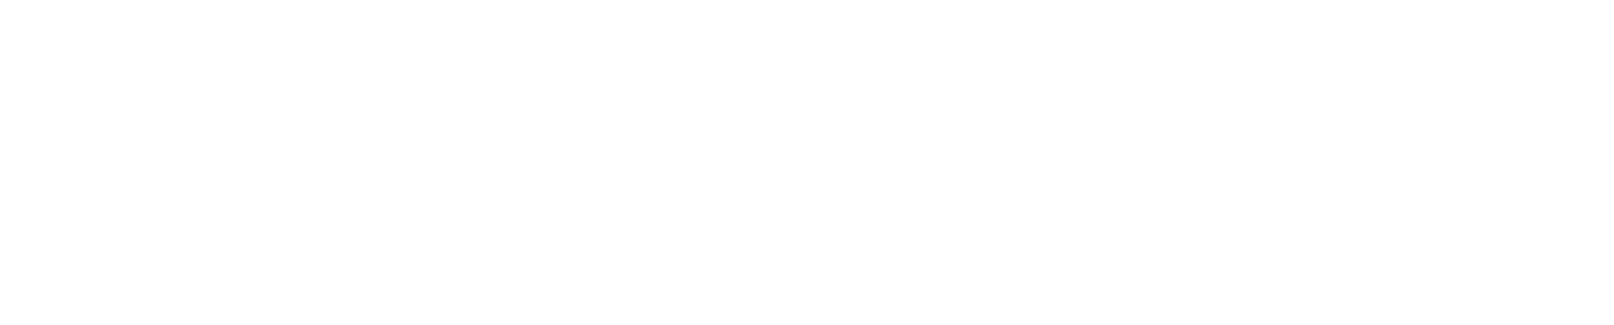 CATL logo pour fonds sombres (PNG transparent)